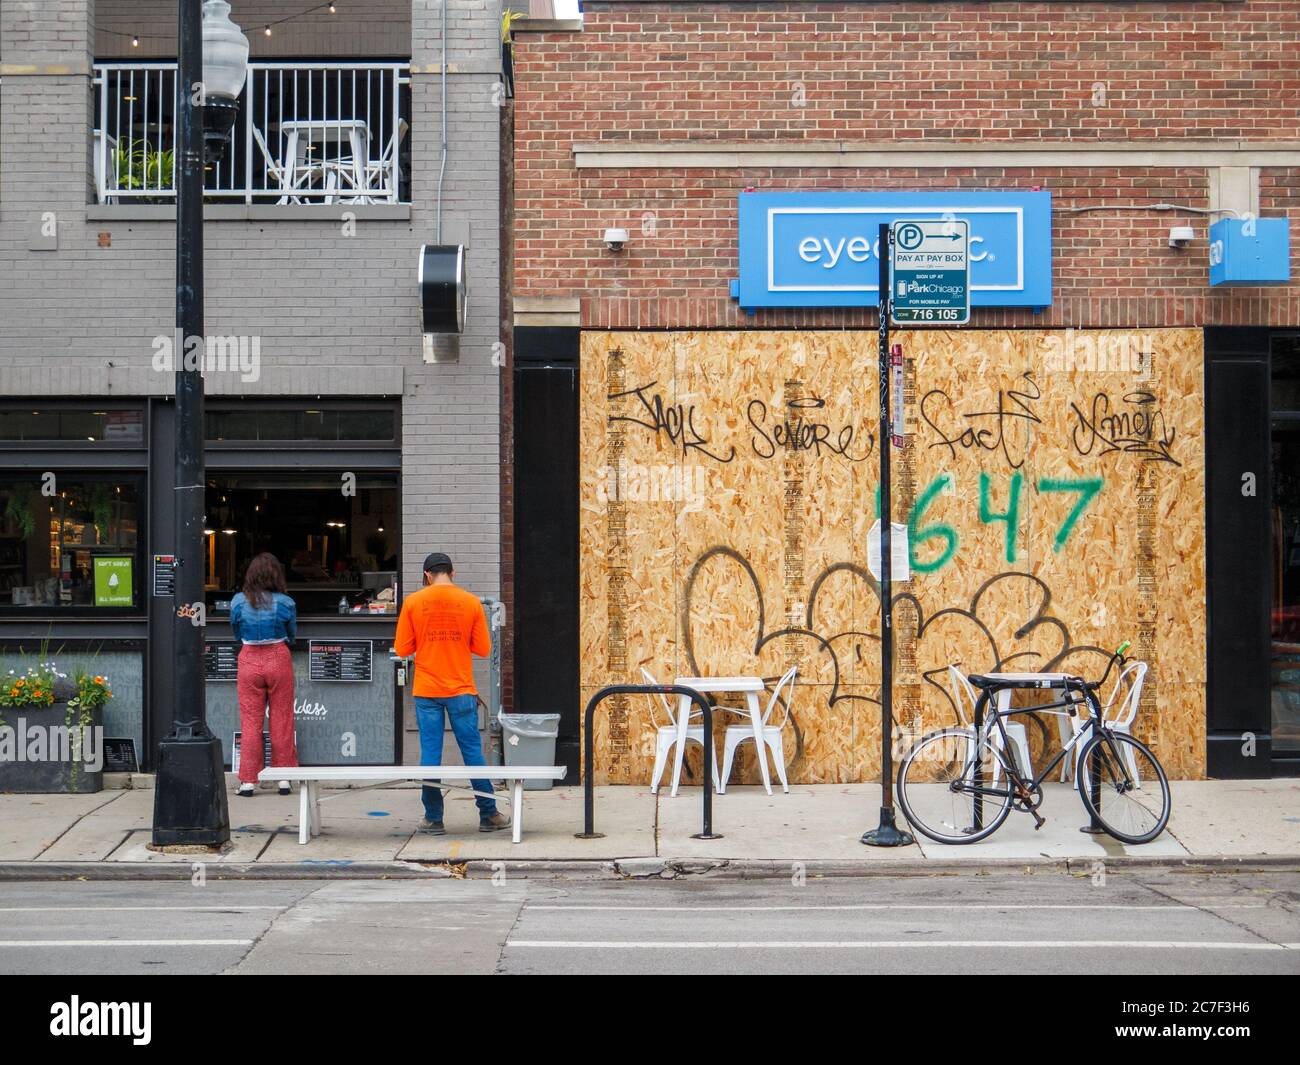 Si è imbarcato sul fronte dello storefront, risultato di recenti disordini civili. Cammina fino alla finestra del caffè con i clienti. Bucktown Neighborhood, Chicago, Illinois. Foto Stock